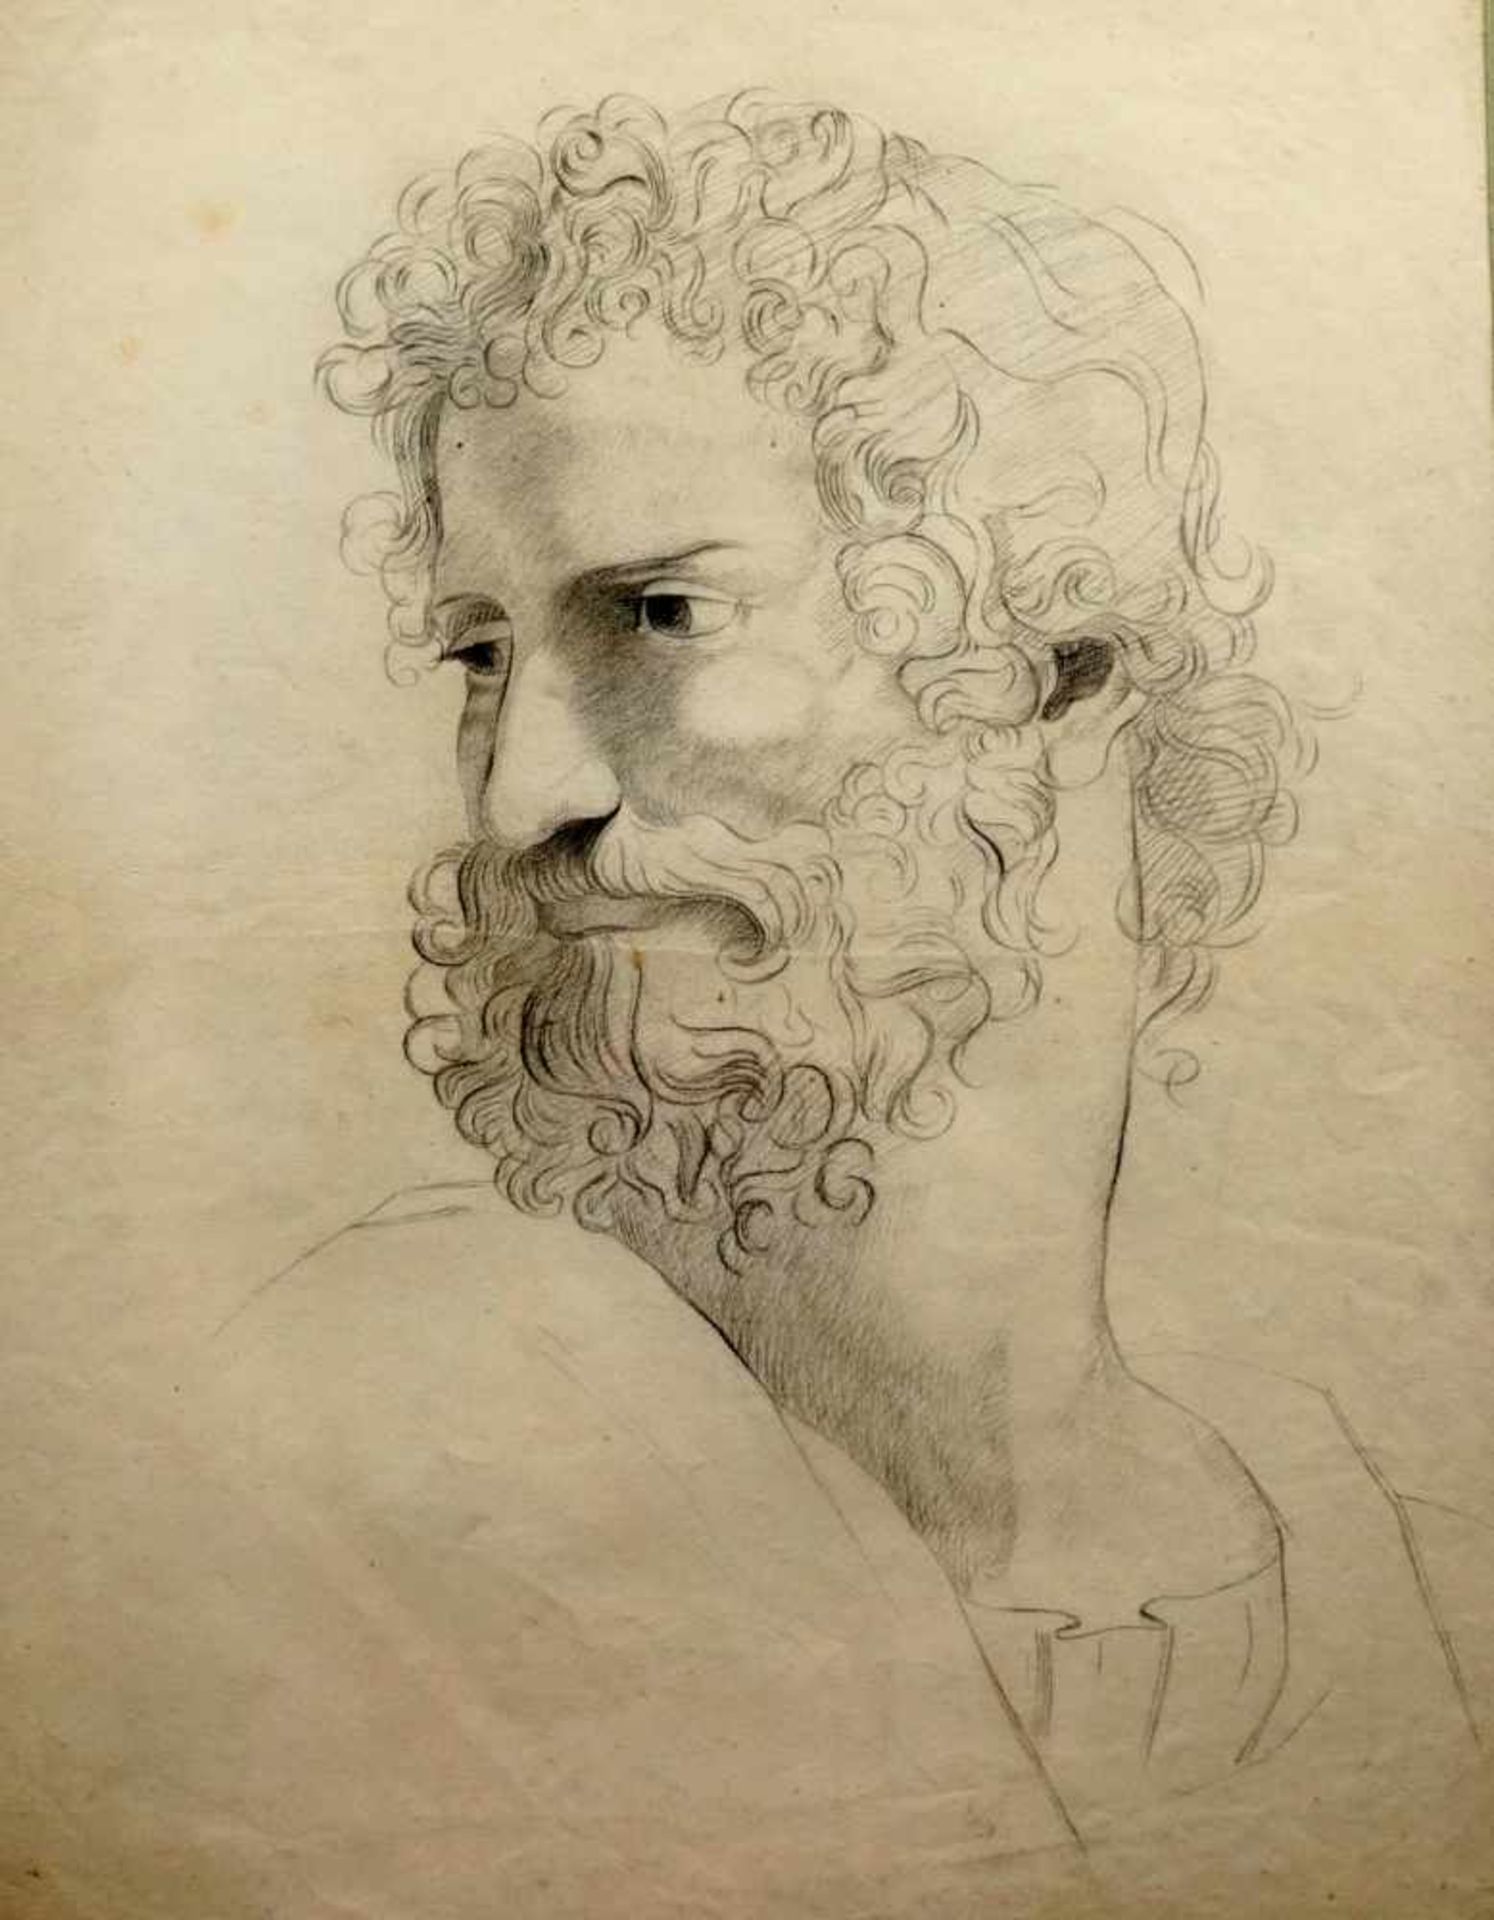 Kopfstudie eines BärtigenBleistift/Papier. Zeichnung eines gelockten Männerkopfes mit Bart,